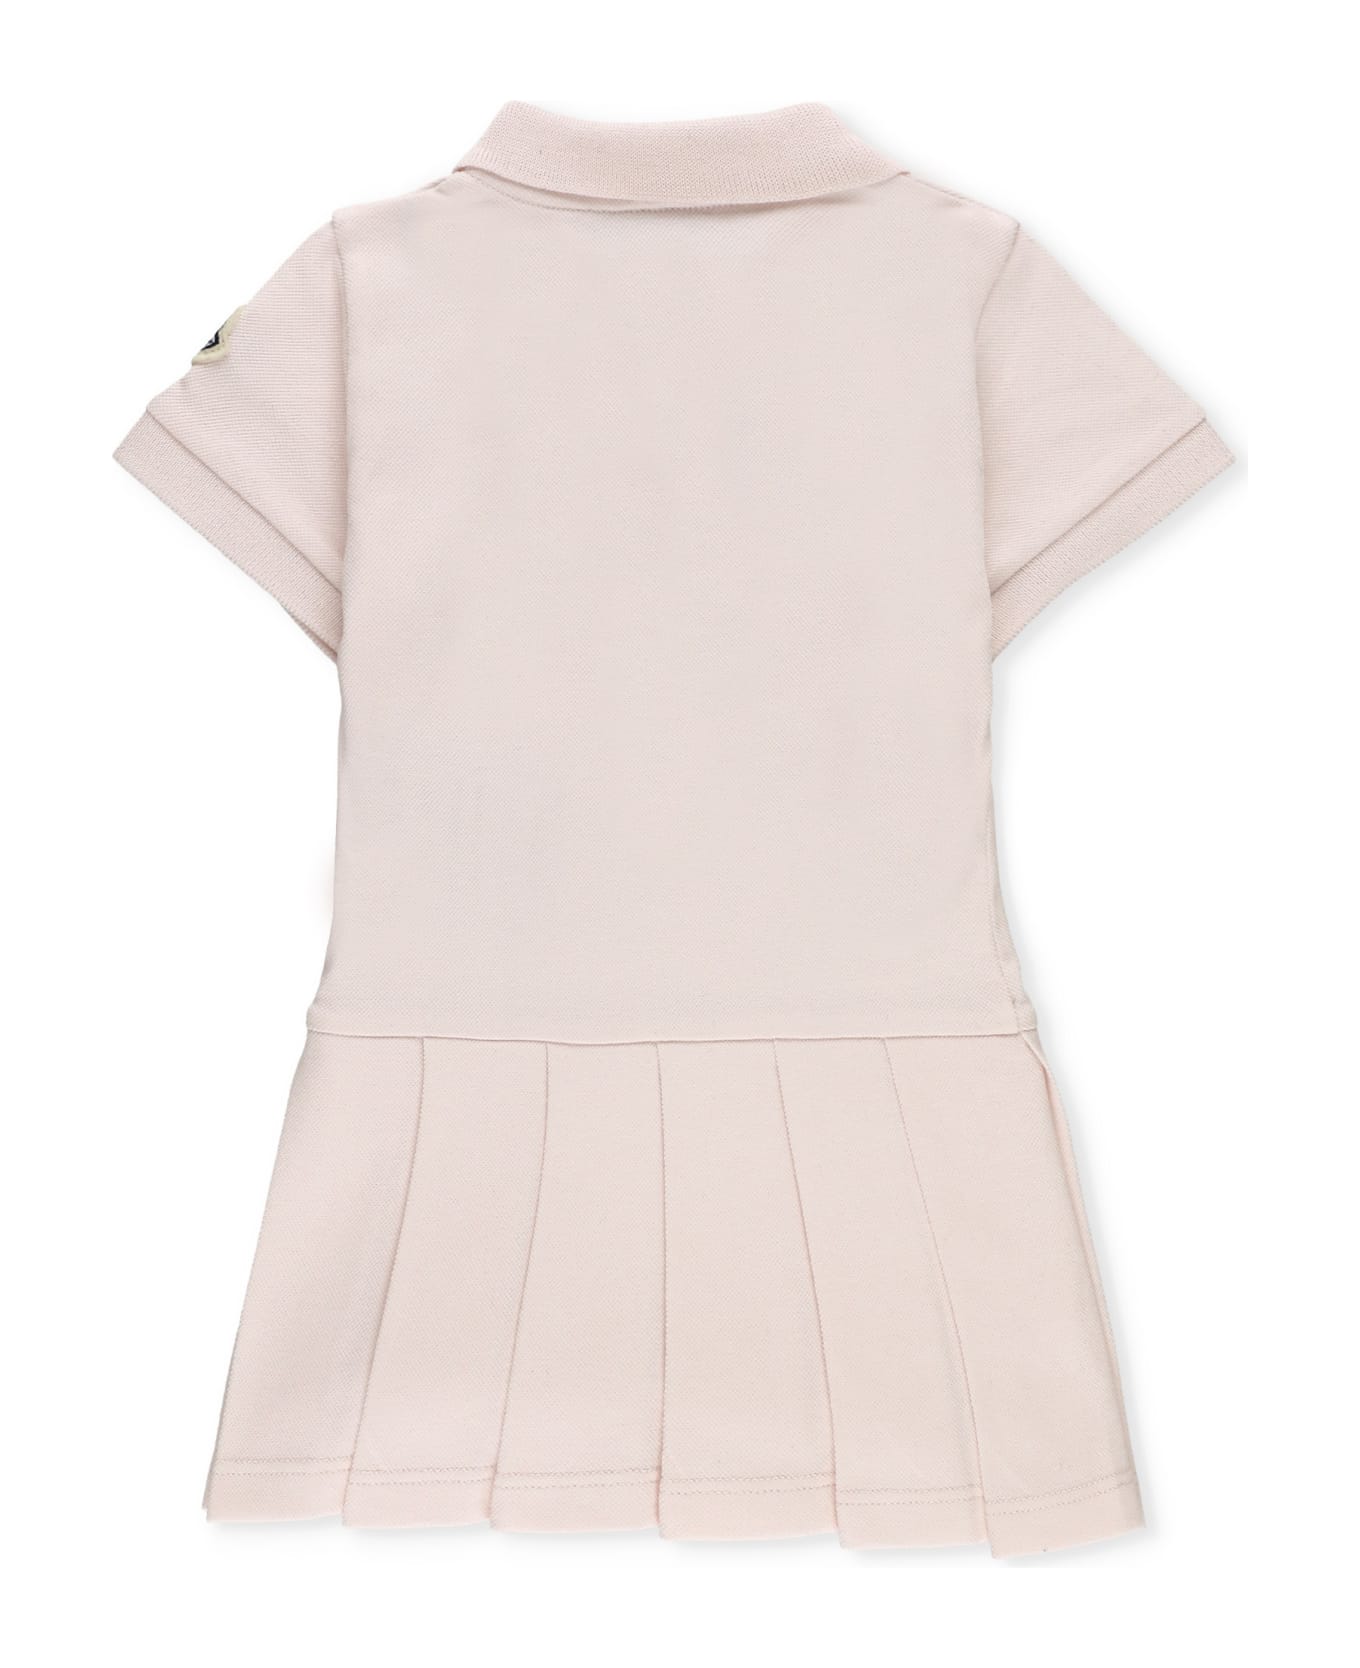 Moncler Cotton Dress - Pink ワンピース＆ドレス